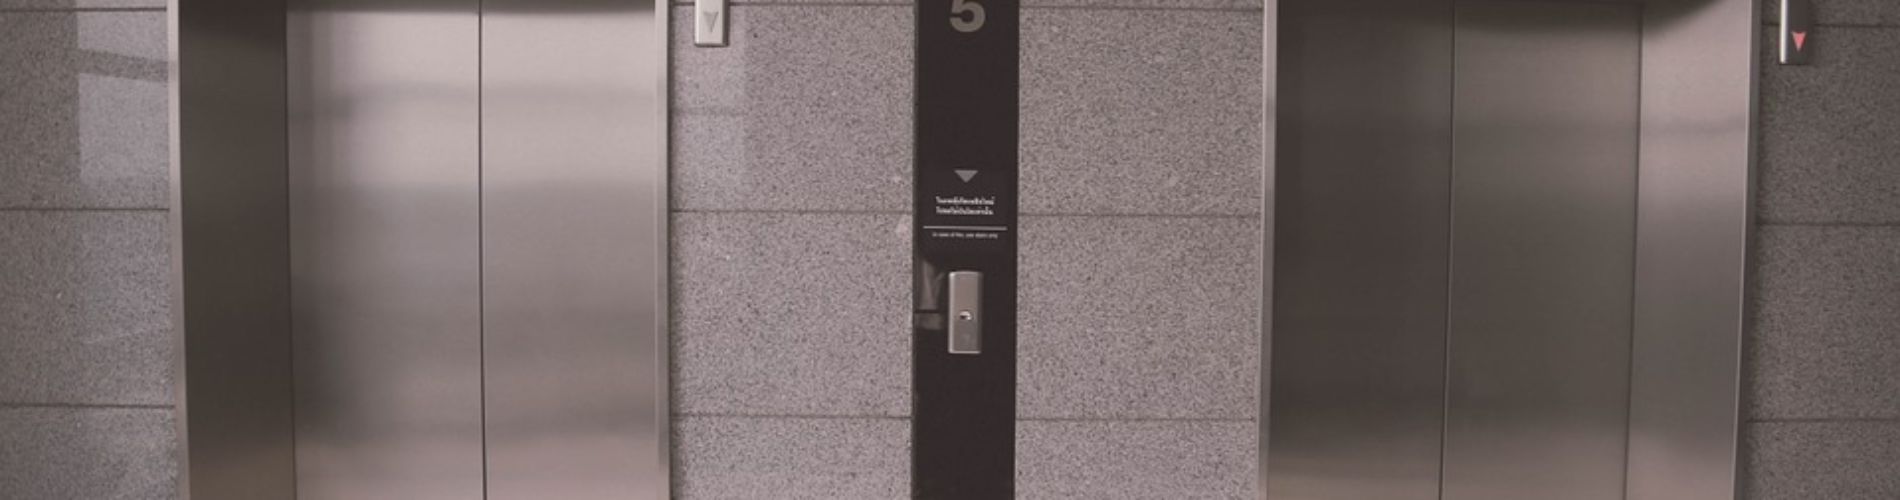 Immagine di Messa in esercizio ascensori ed elevatori 